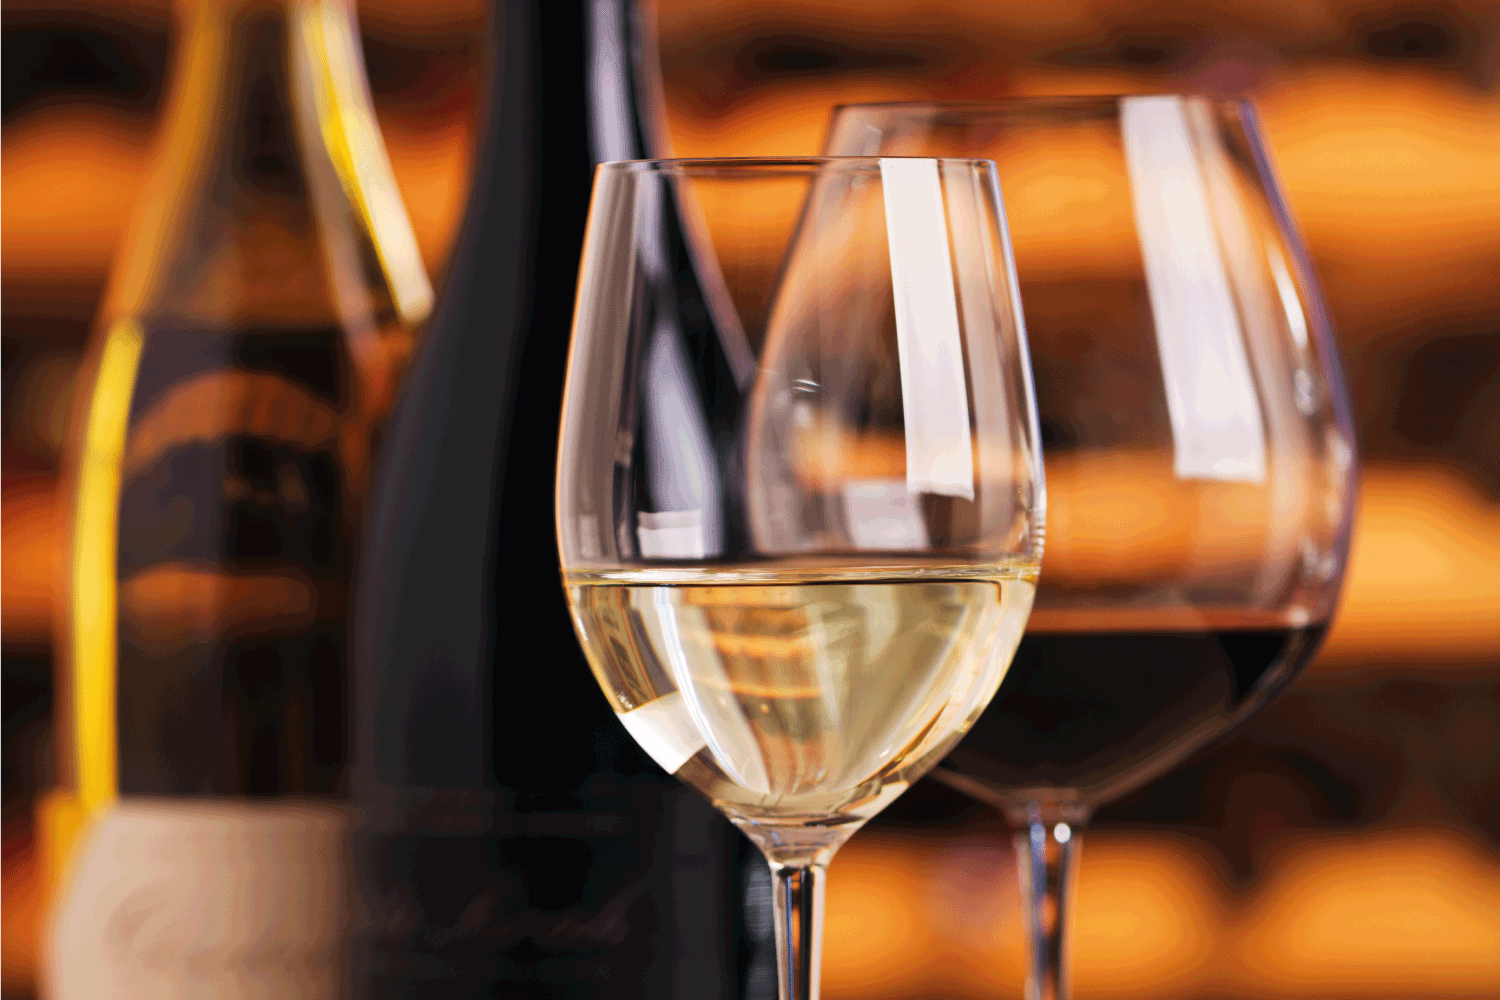 酒杯和酒瓶展示为品酒服务。红色和白色的发酵葡萄饮料被倒入两个闪亮的玻璃杯中。